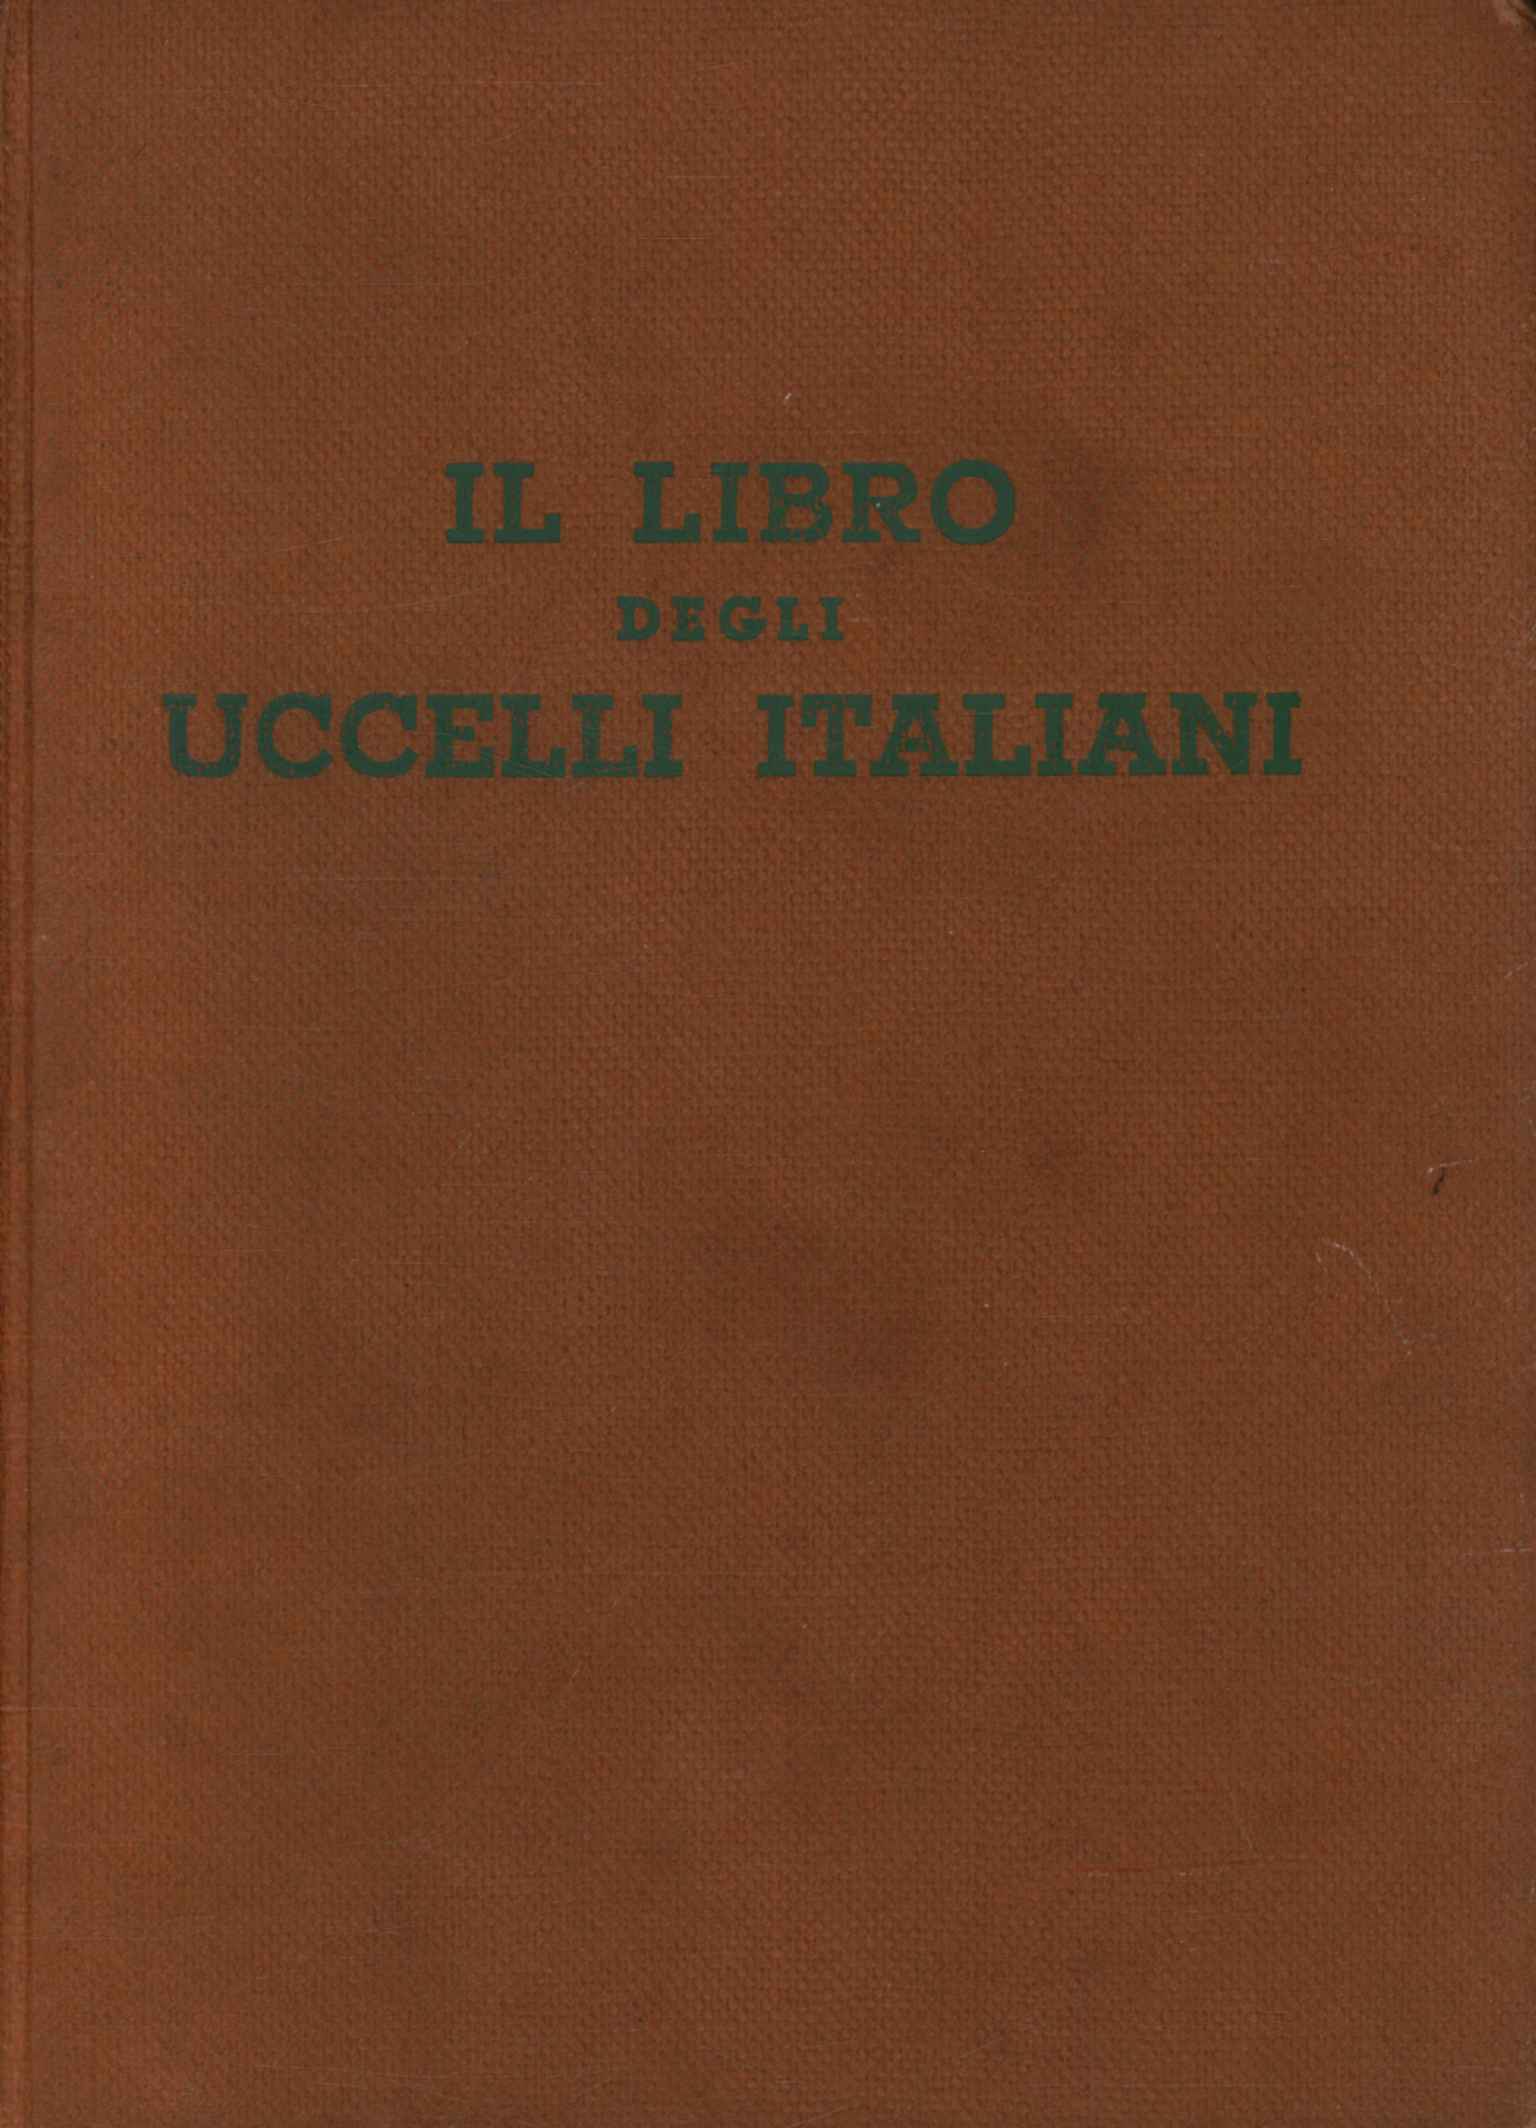 El libro de los pájaros italianos.